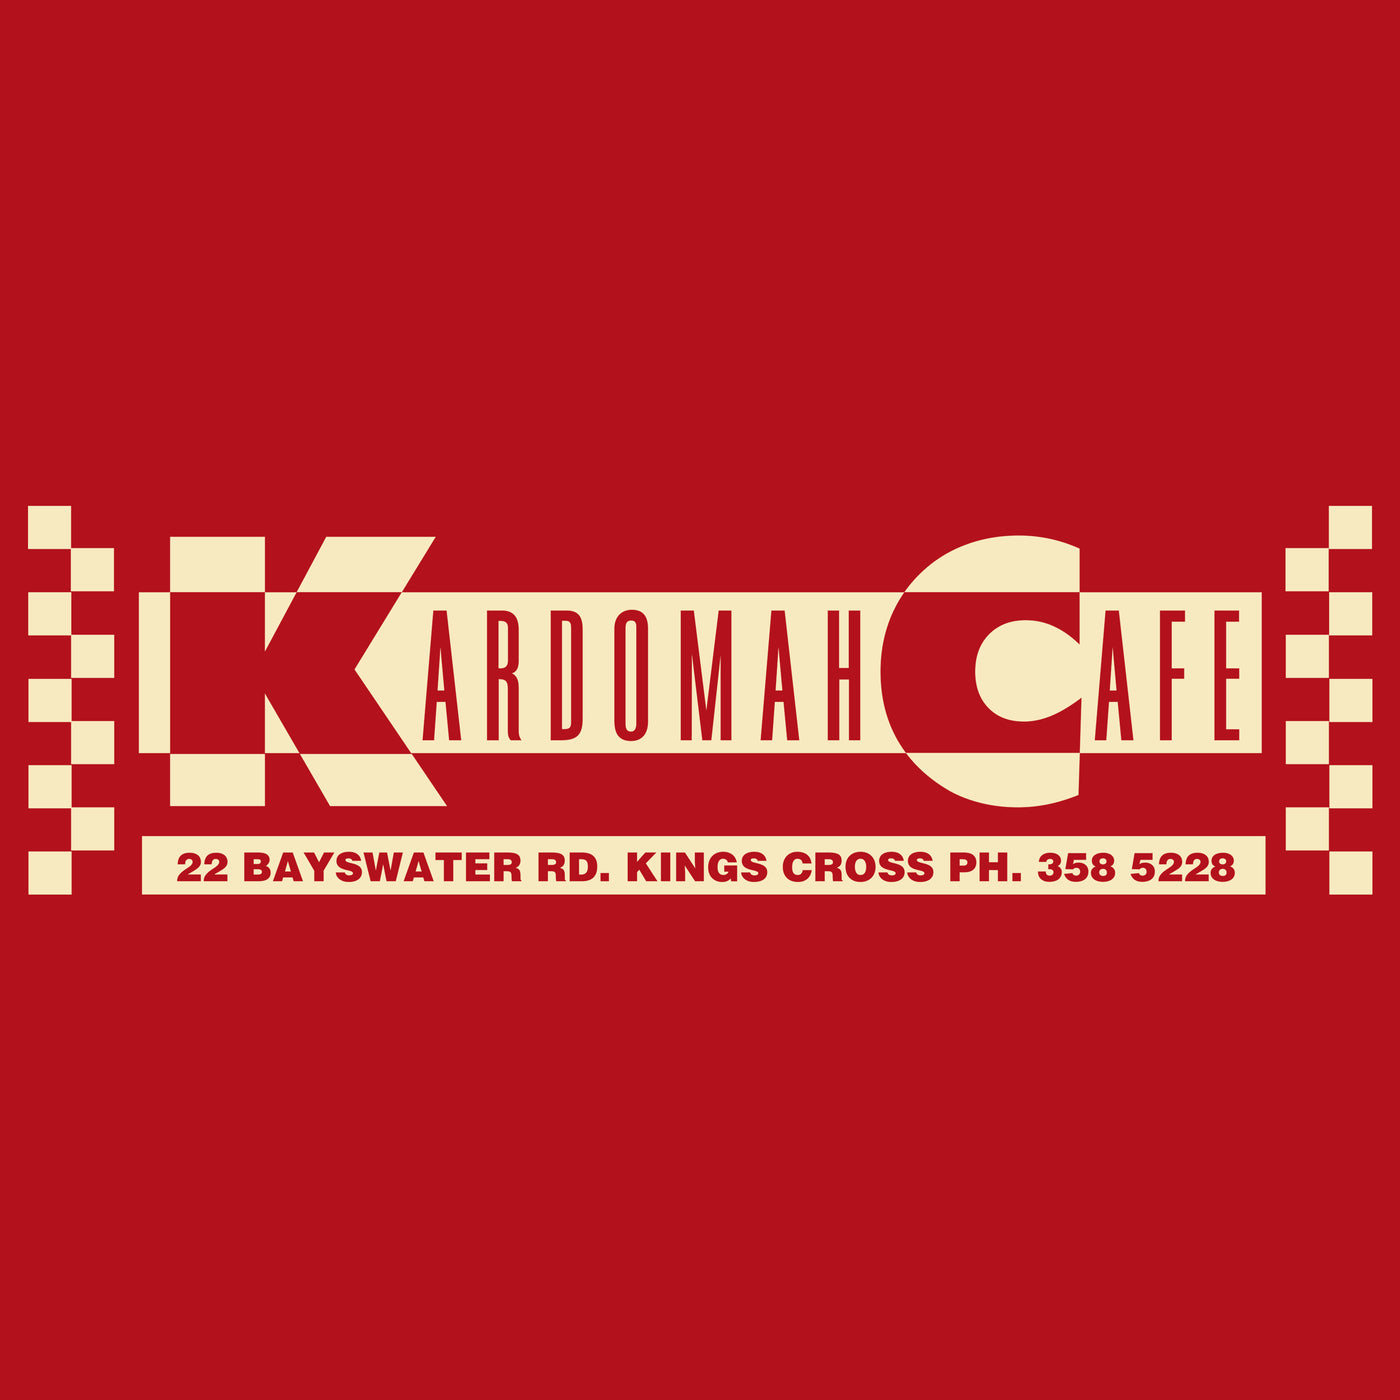 Kardomah Cafe - Fem